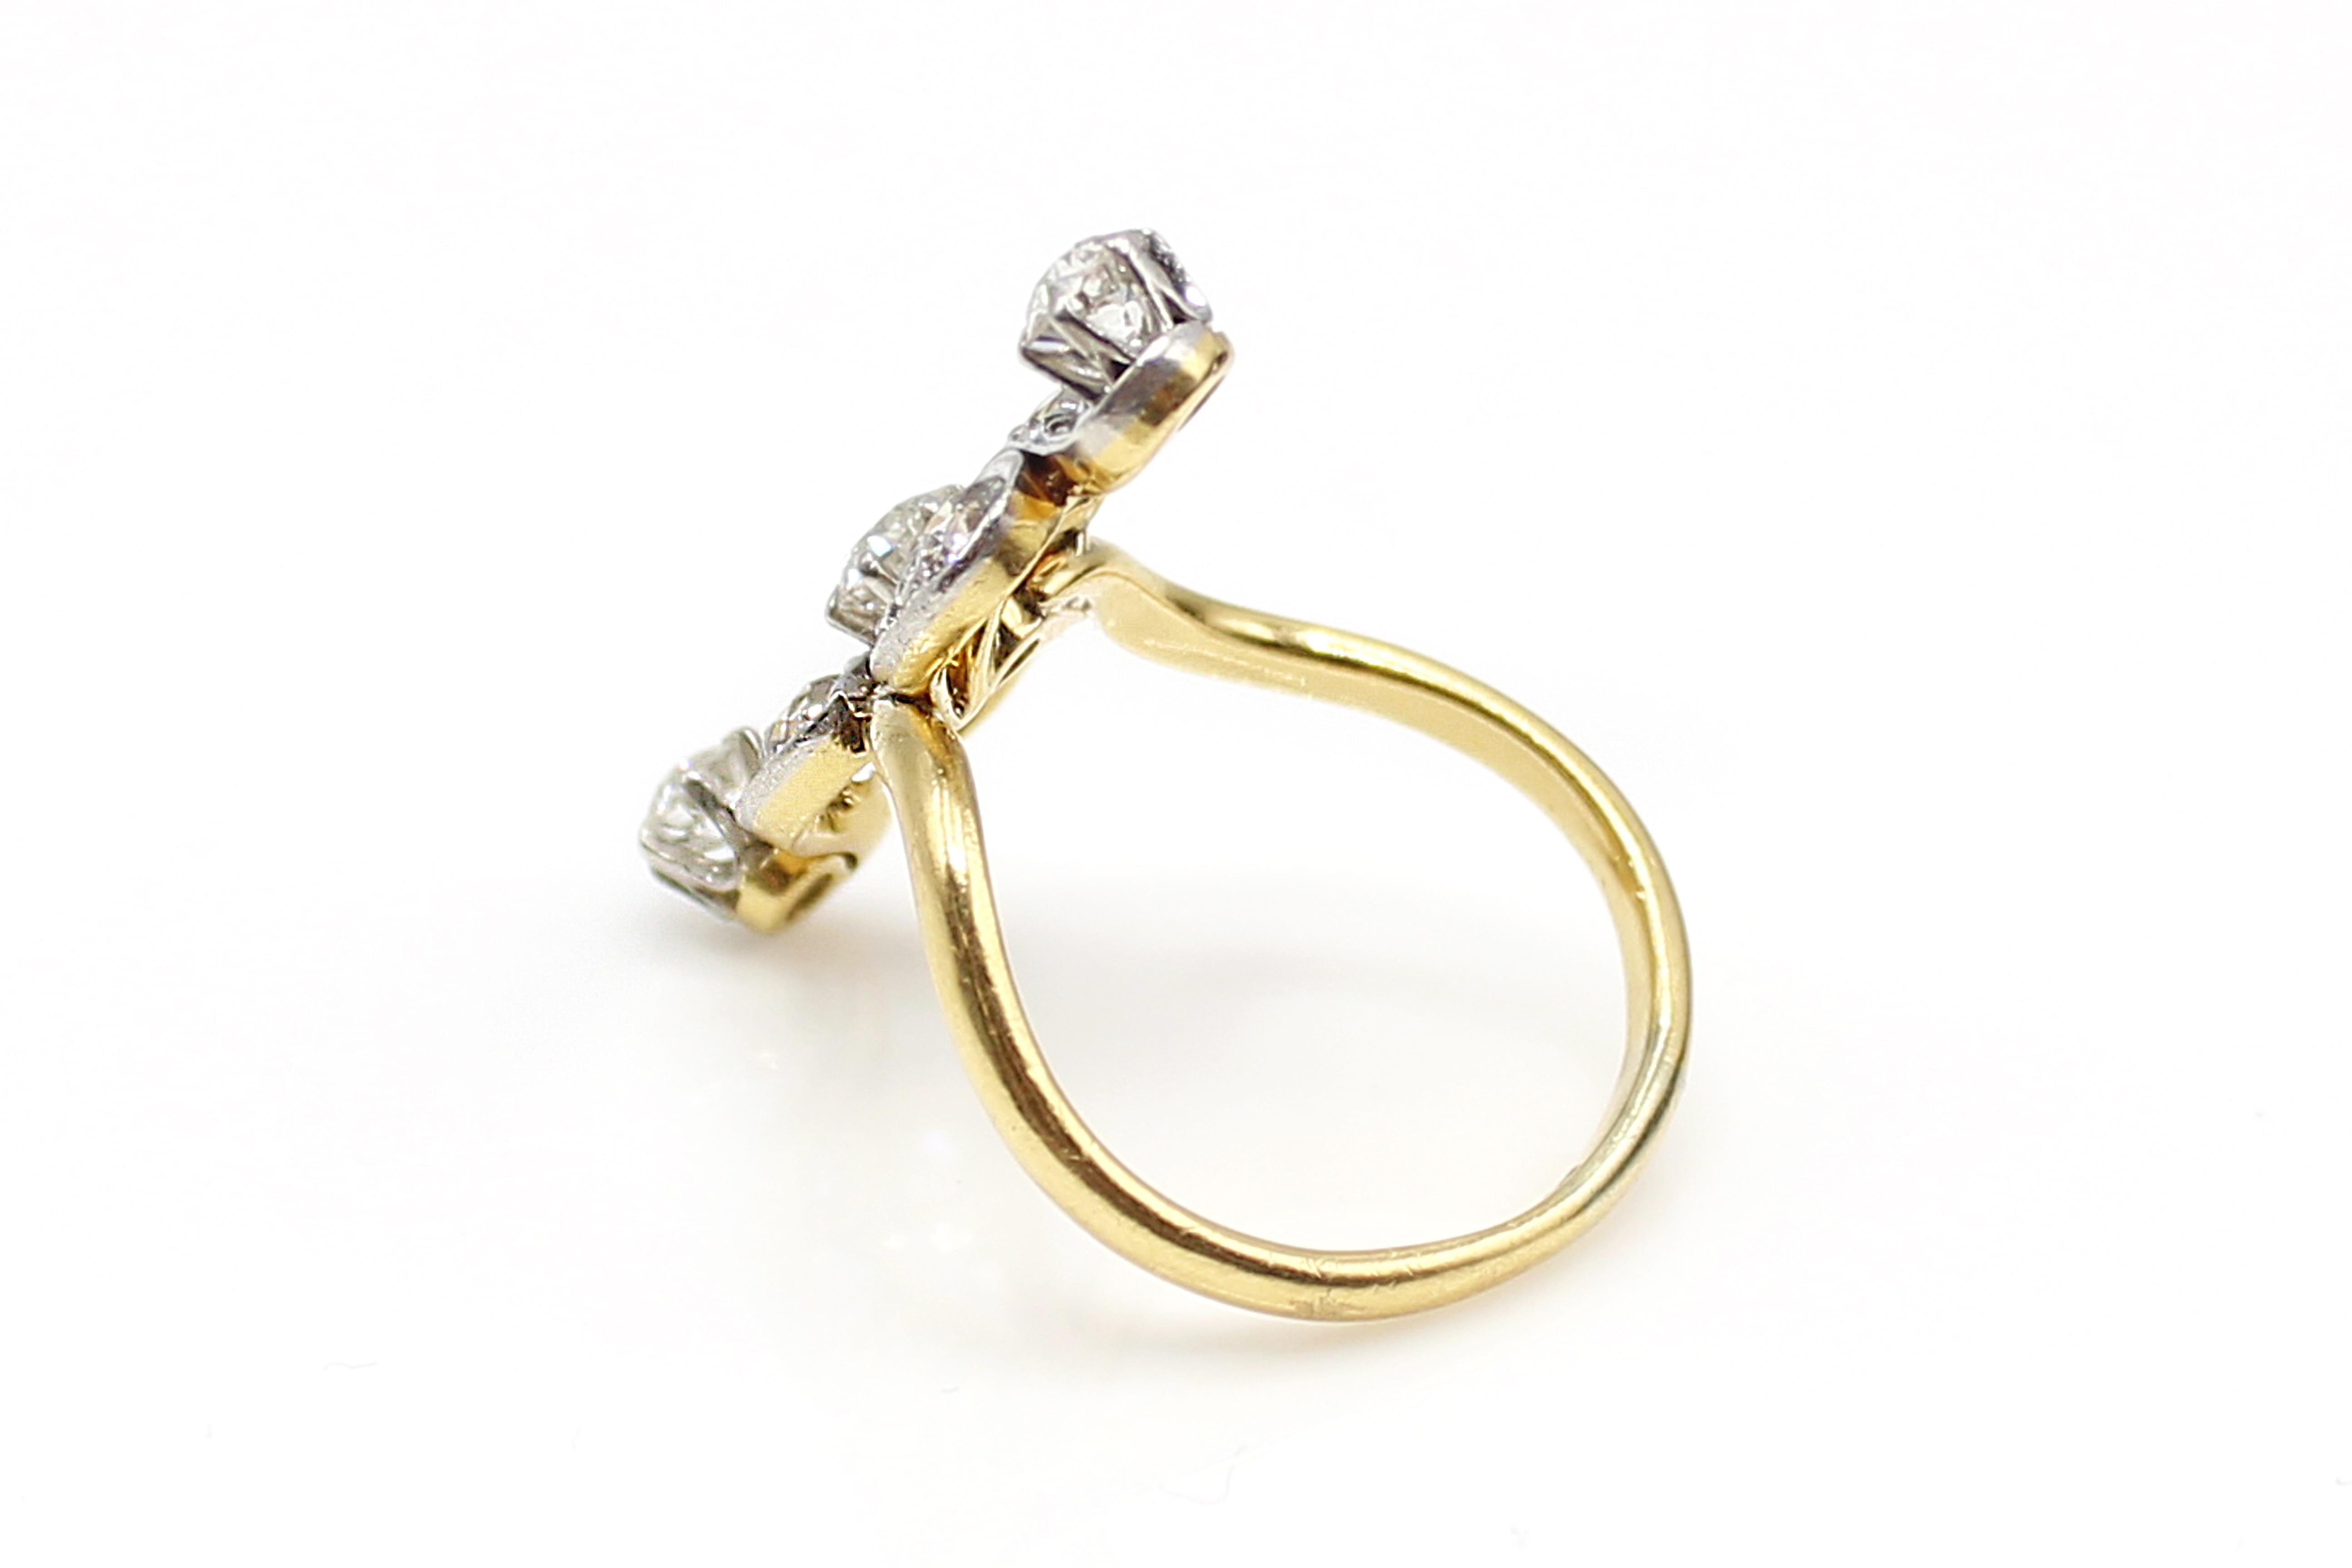 Wunderschöner Belle-Epoque-Ring aus Platin mit Diamanten und Schnecken aus der Zeit um 1890. Die 7 strahlend weißen und funkelnden Diamanten im alteuropäischen Schliff sind in Platin gefasst, während die Galerie und der Schaft aus 18 Karat Gelbgold